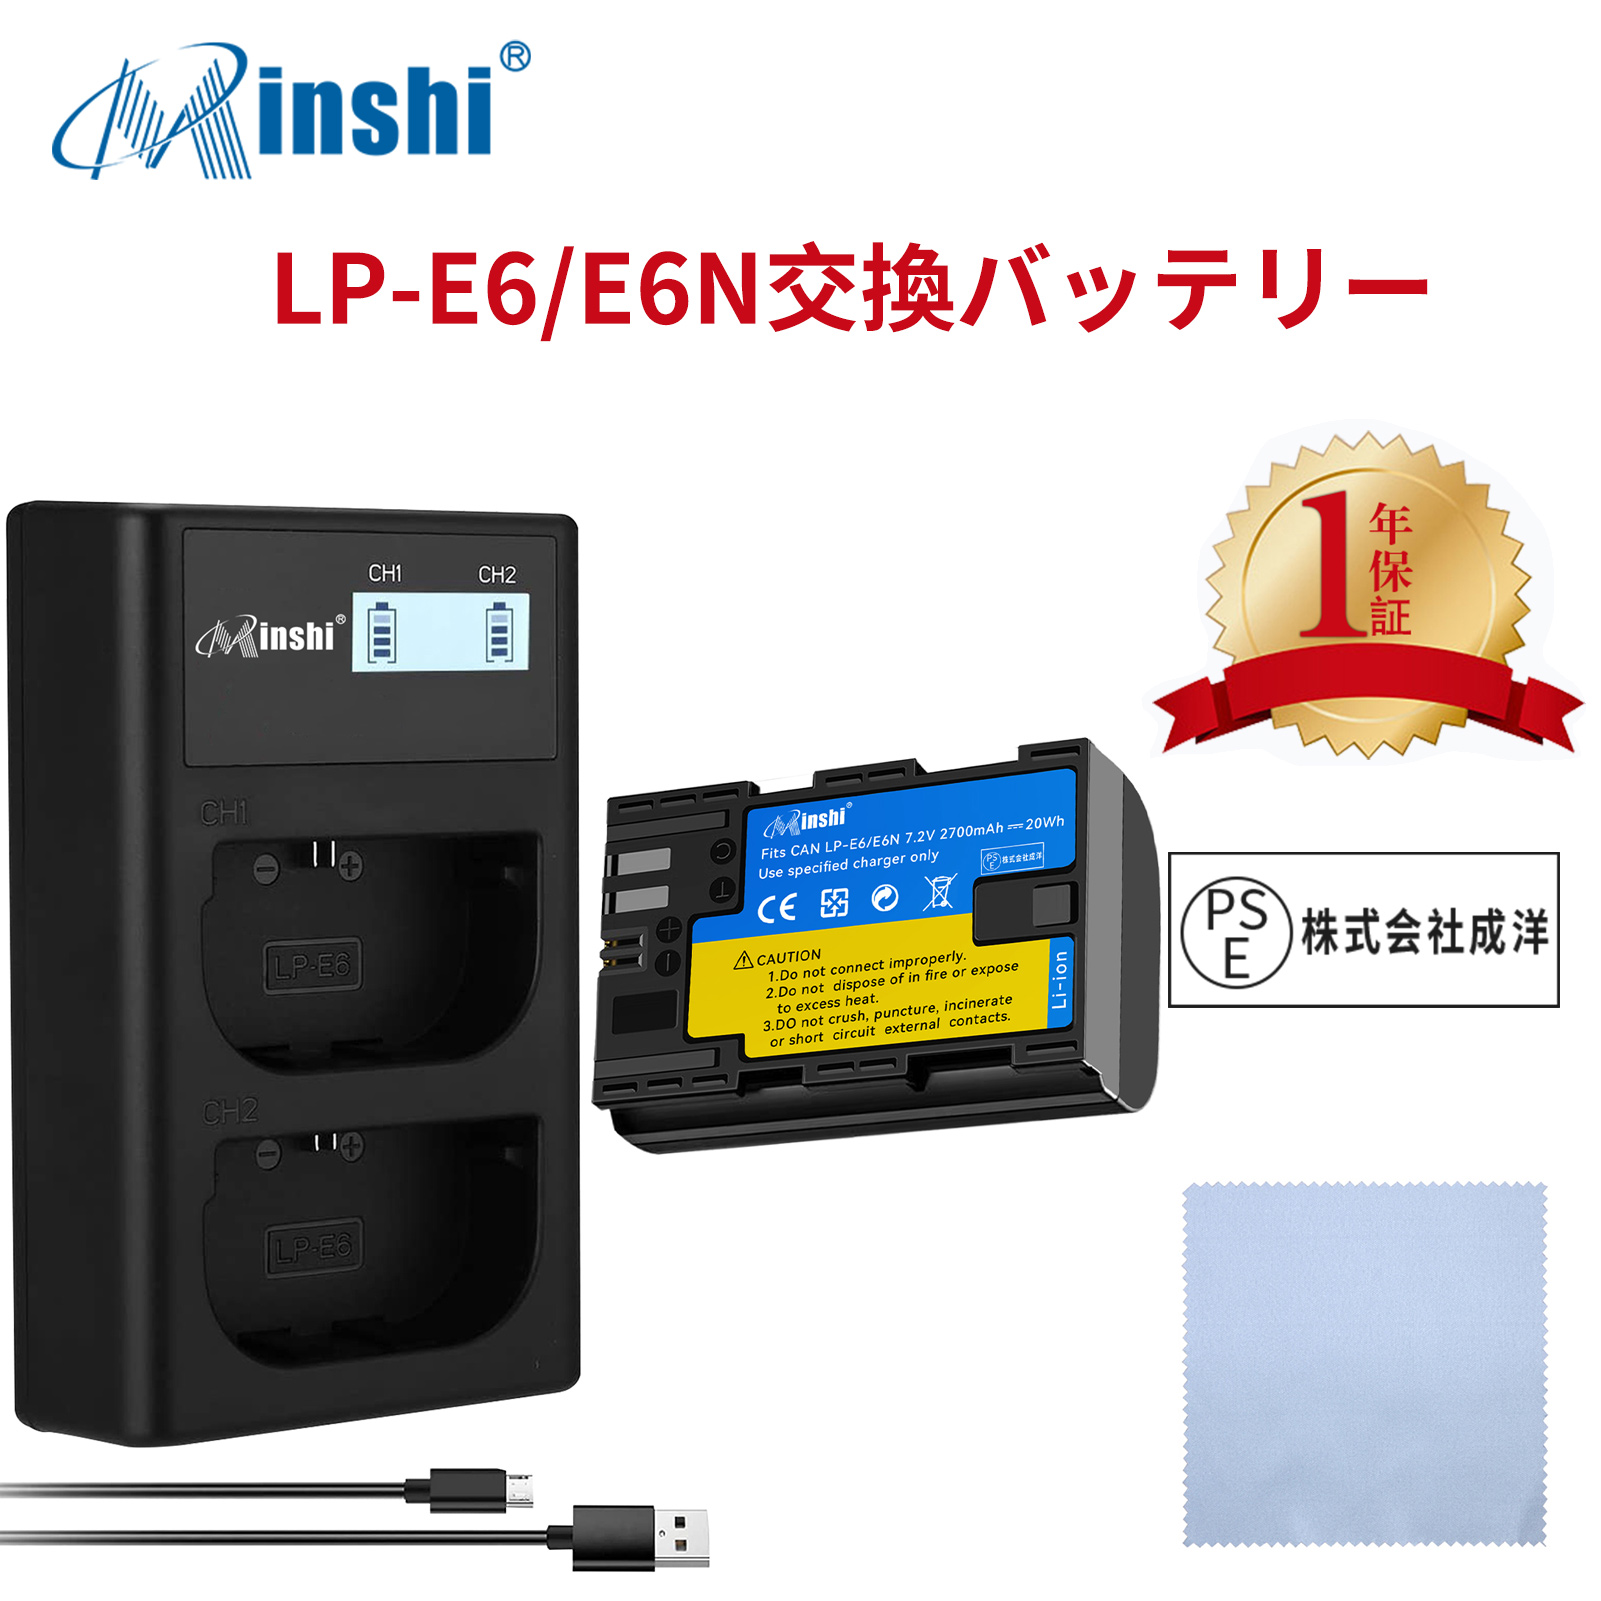 【セット】minshi Canon EOS 6D LP-E6 LP-E6N EOS6D CANON 80D 【2700mAh 7.2V】高品質 LP-E6NH 交換用バッテリー